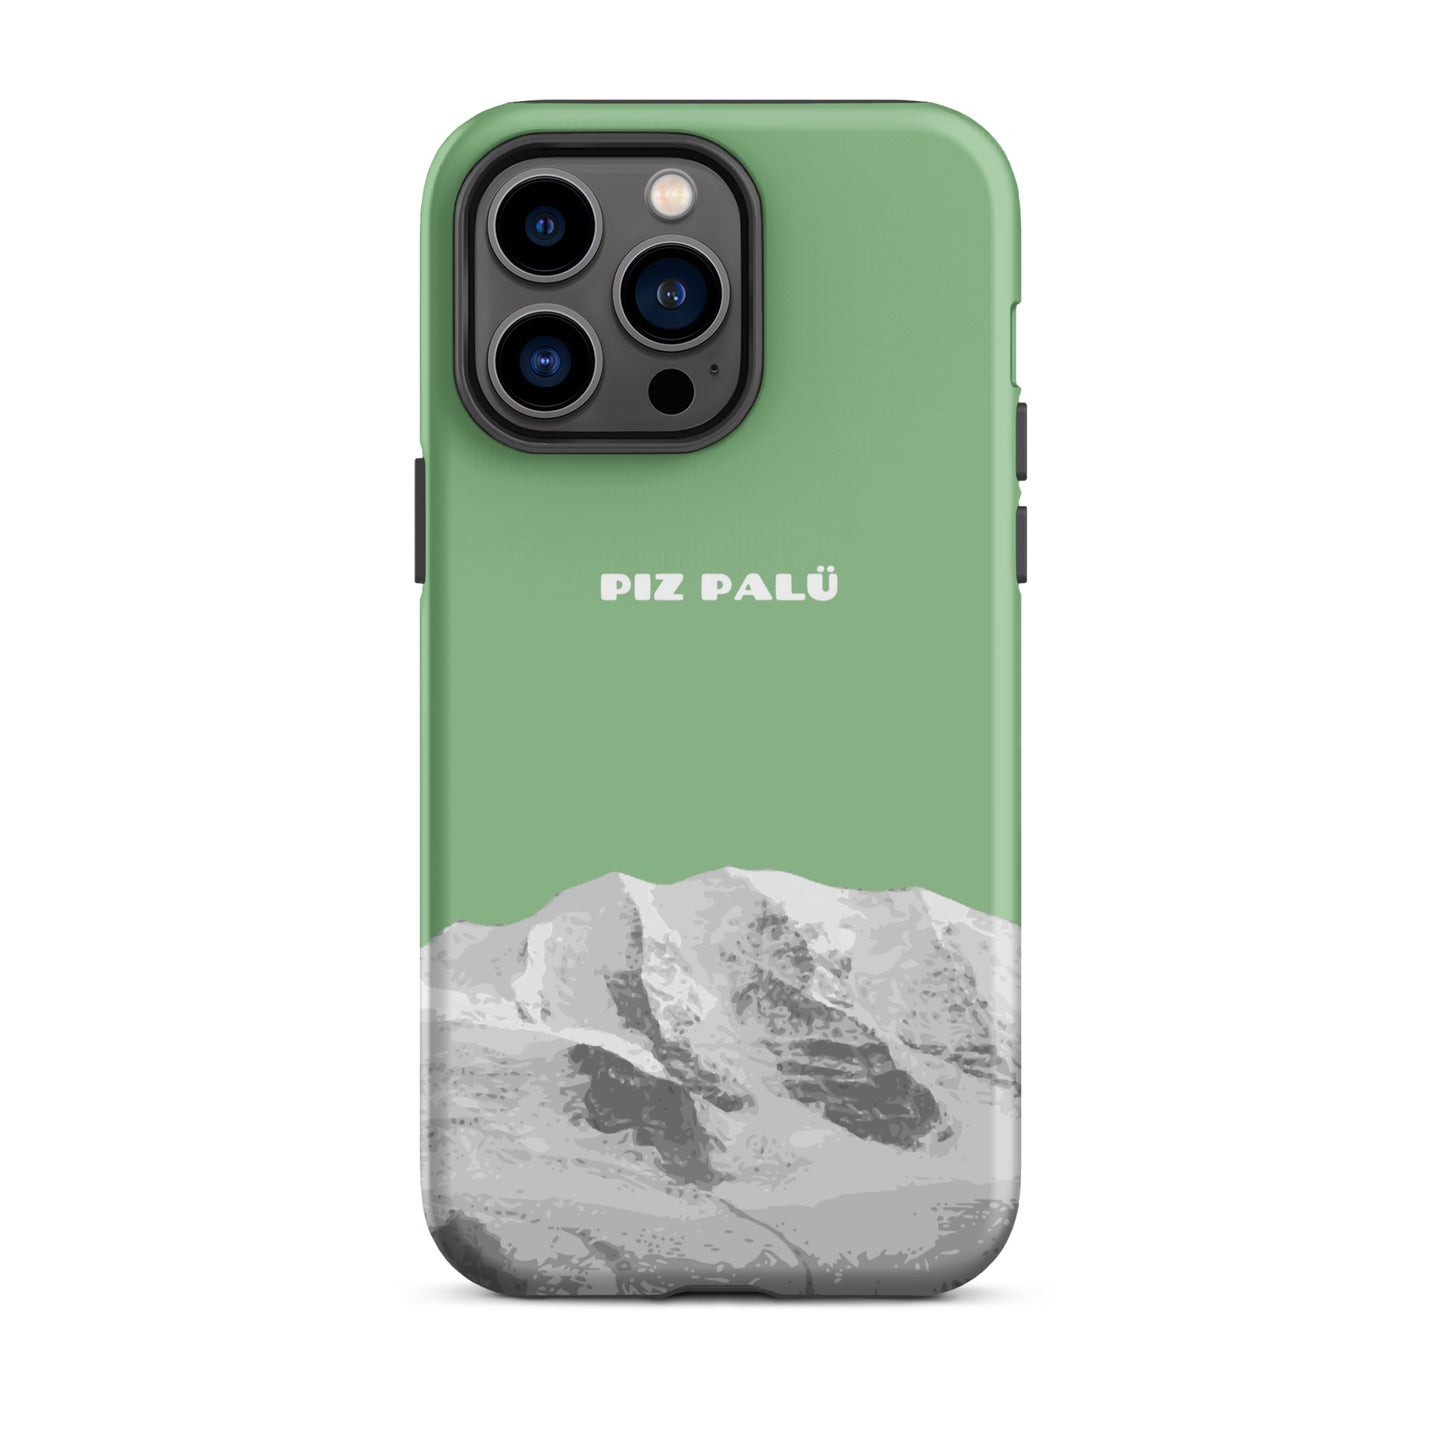 Hülle für das iPhone 14 Max Pro von Apple in der Farbe Hellgrün, dass den Piz Palü in Graubünden zeigt.